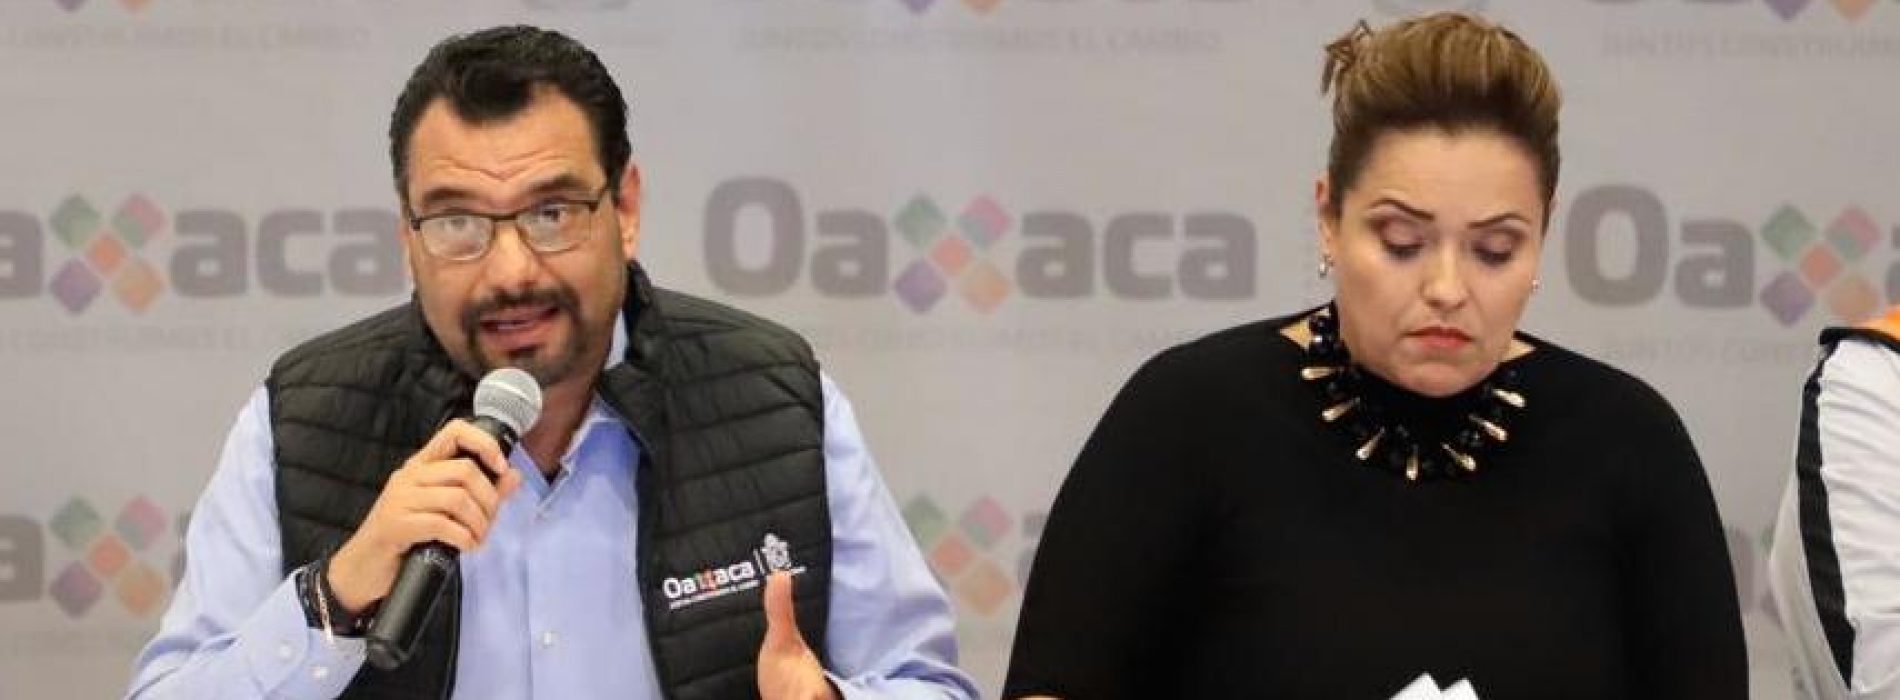 Oaxaca aún no está lista para practicar el aborto: D. Casas